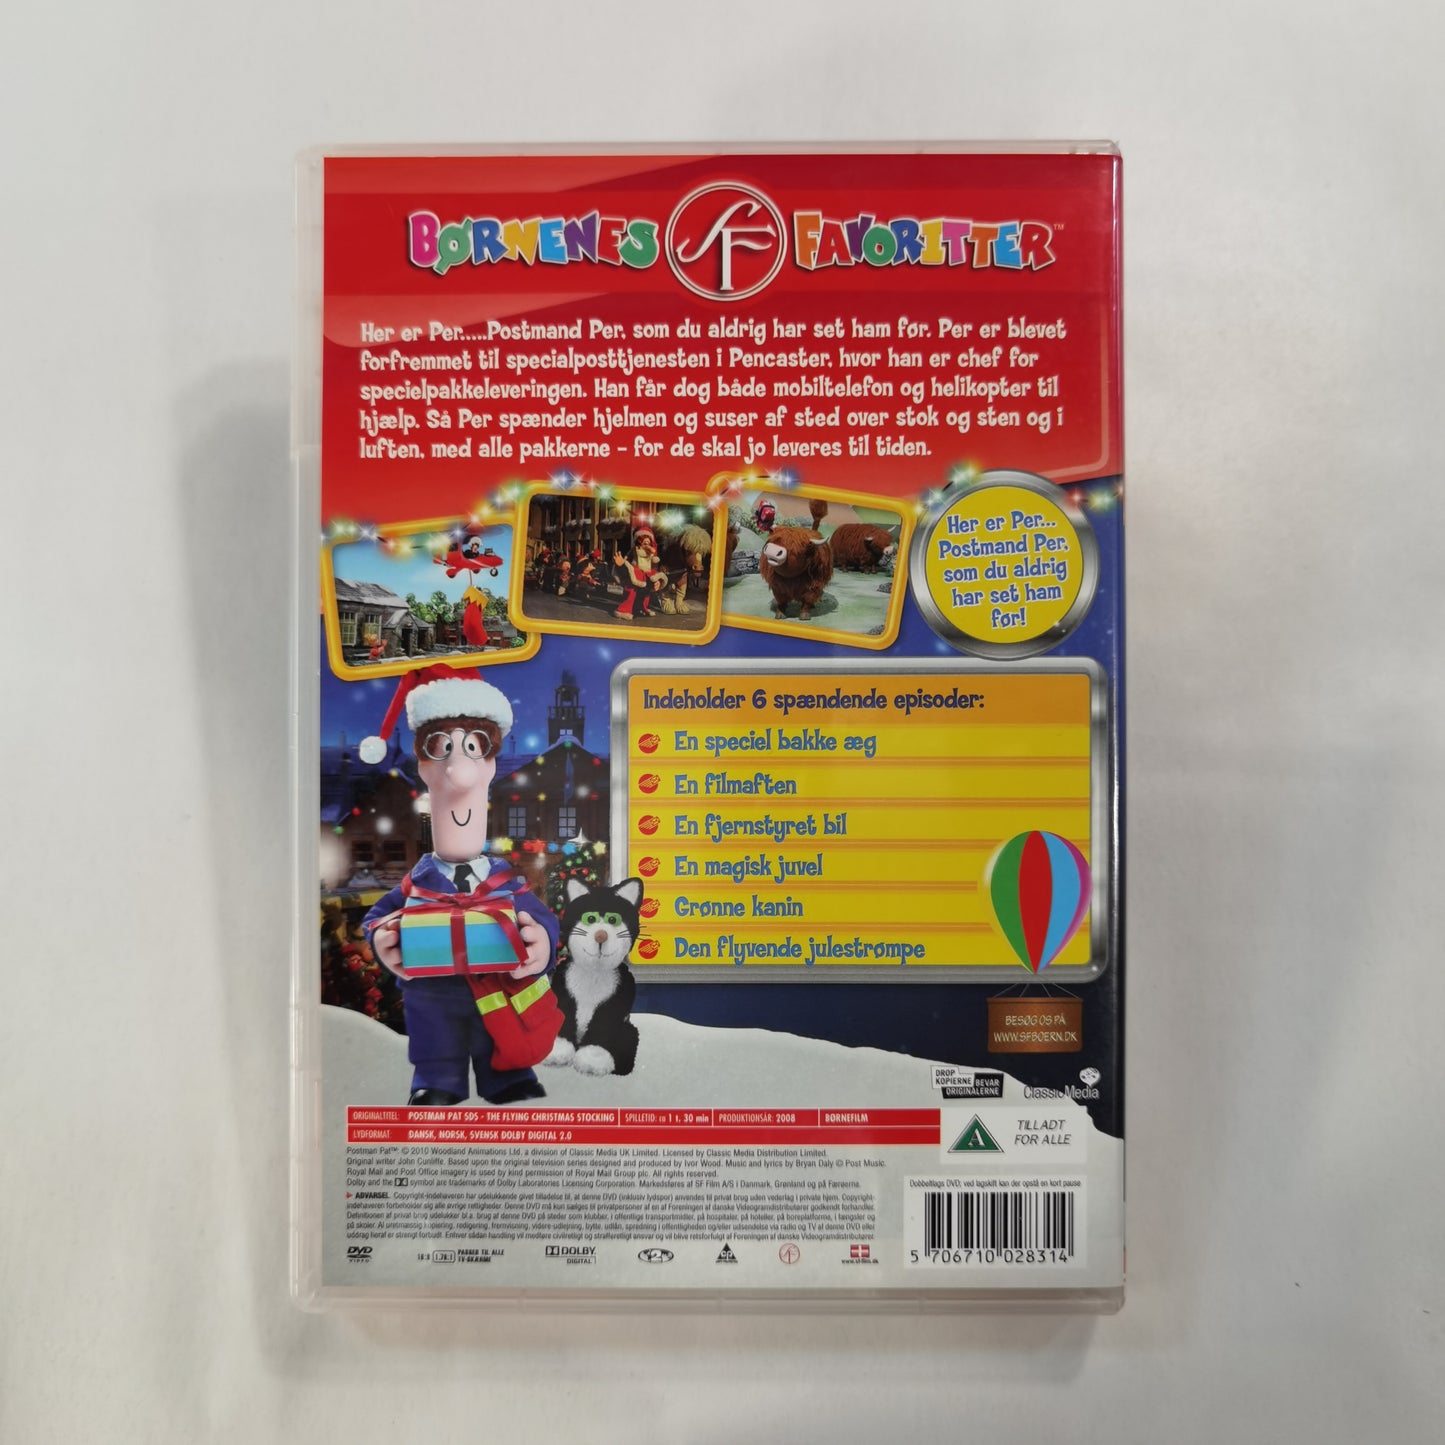 Postman Pat ( Postmand Per: Den Flyvende Julestrømpe ) - DVD DK 2010 Børnenes Favoritter